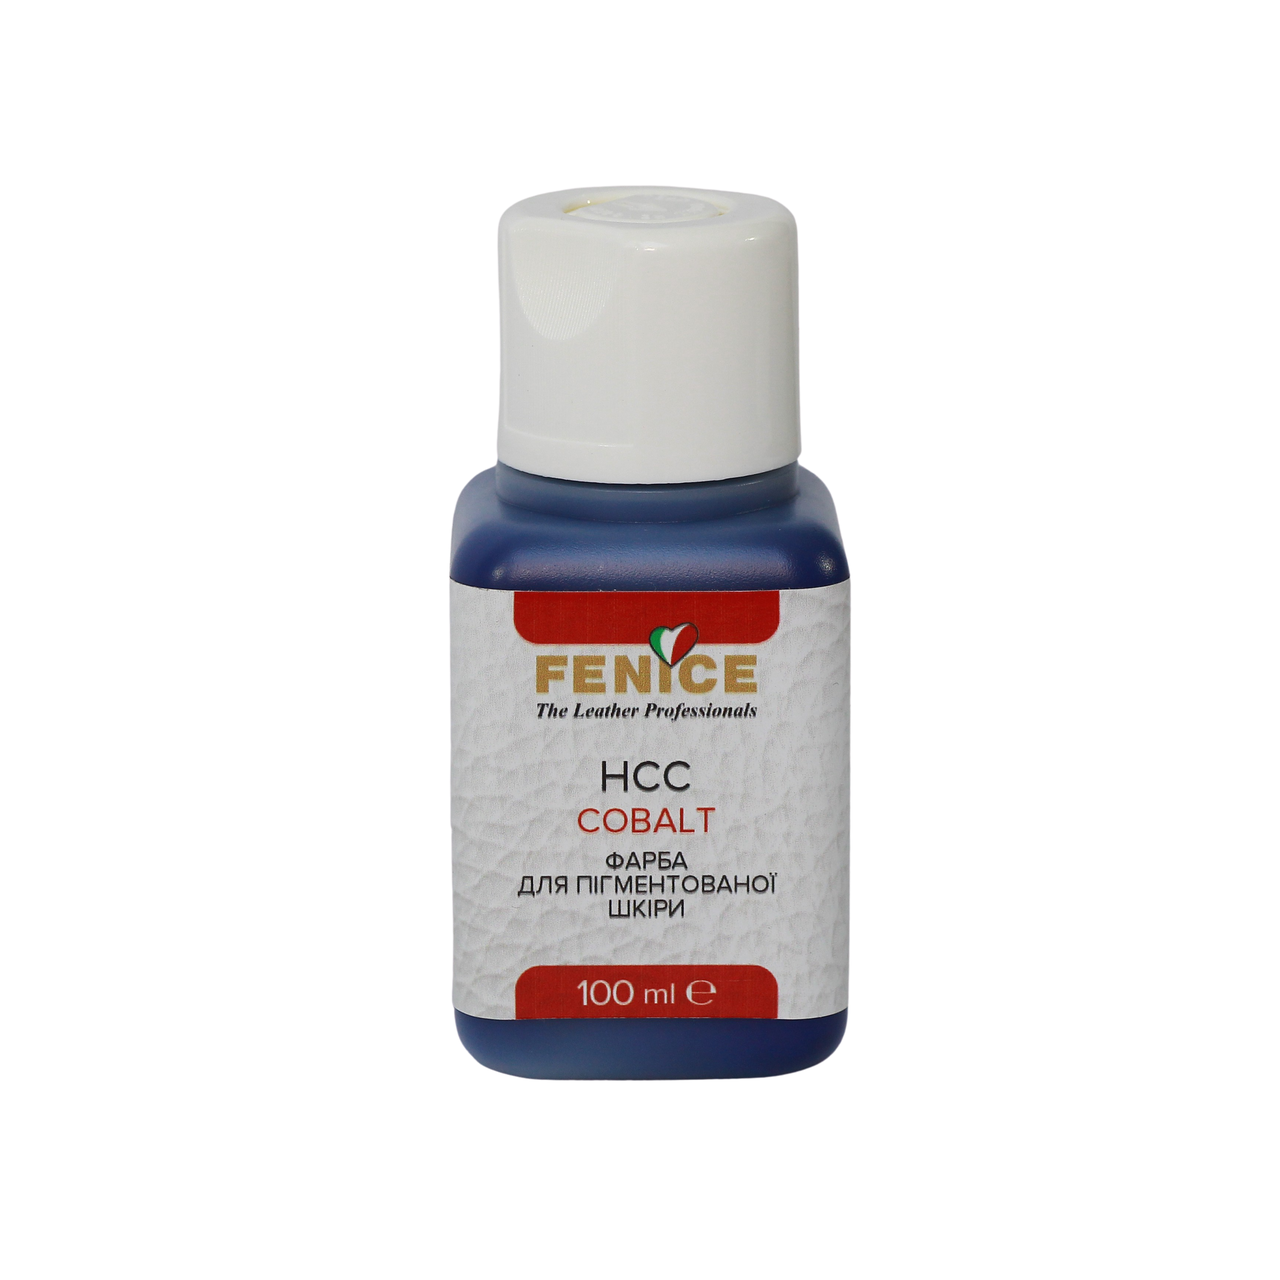 Фарба для шкіри  Кобальт Fenice Cobalt HCC, 100 ml